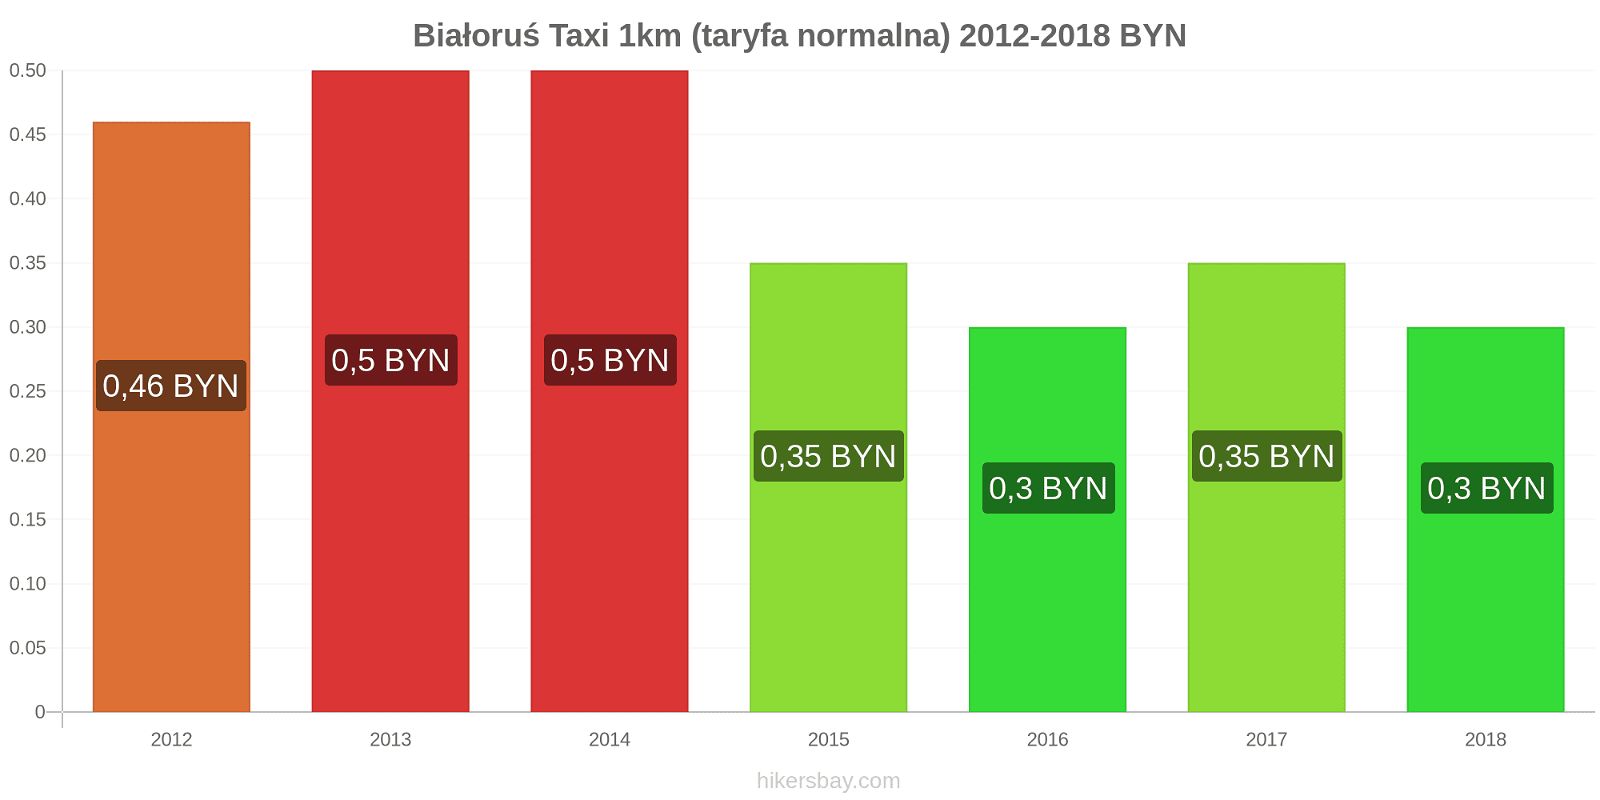 Białoruś zmiany cen Taxi 1km (taryfa normalna) hikersbay.com